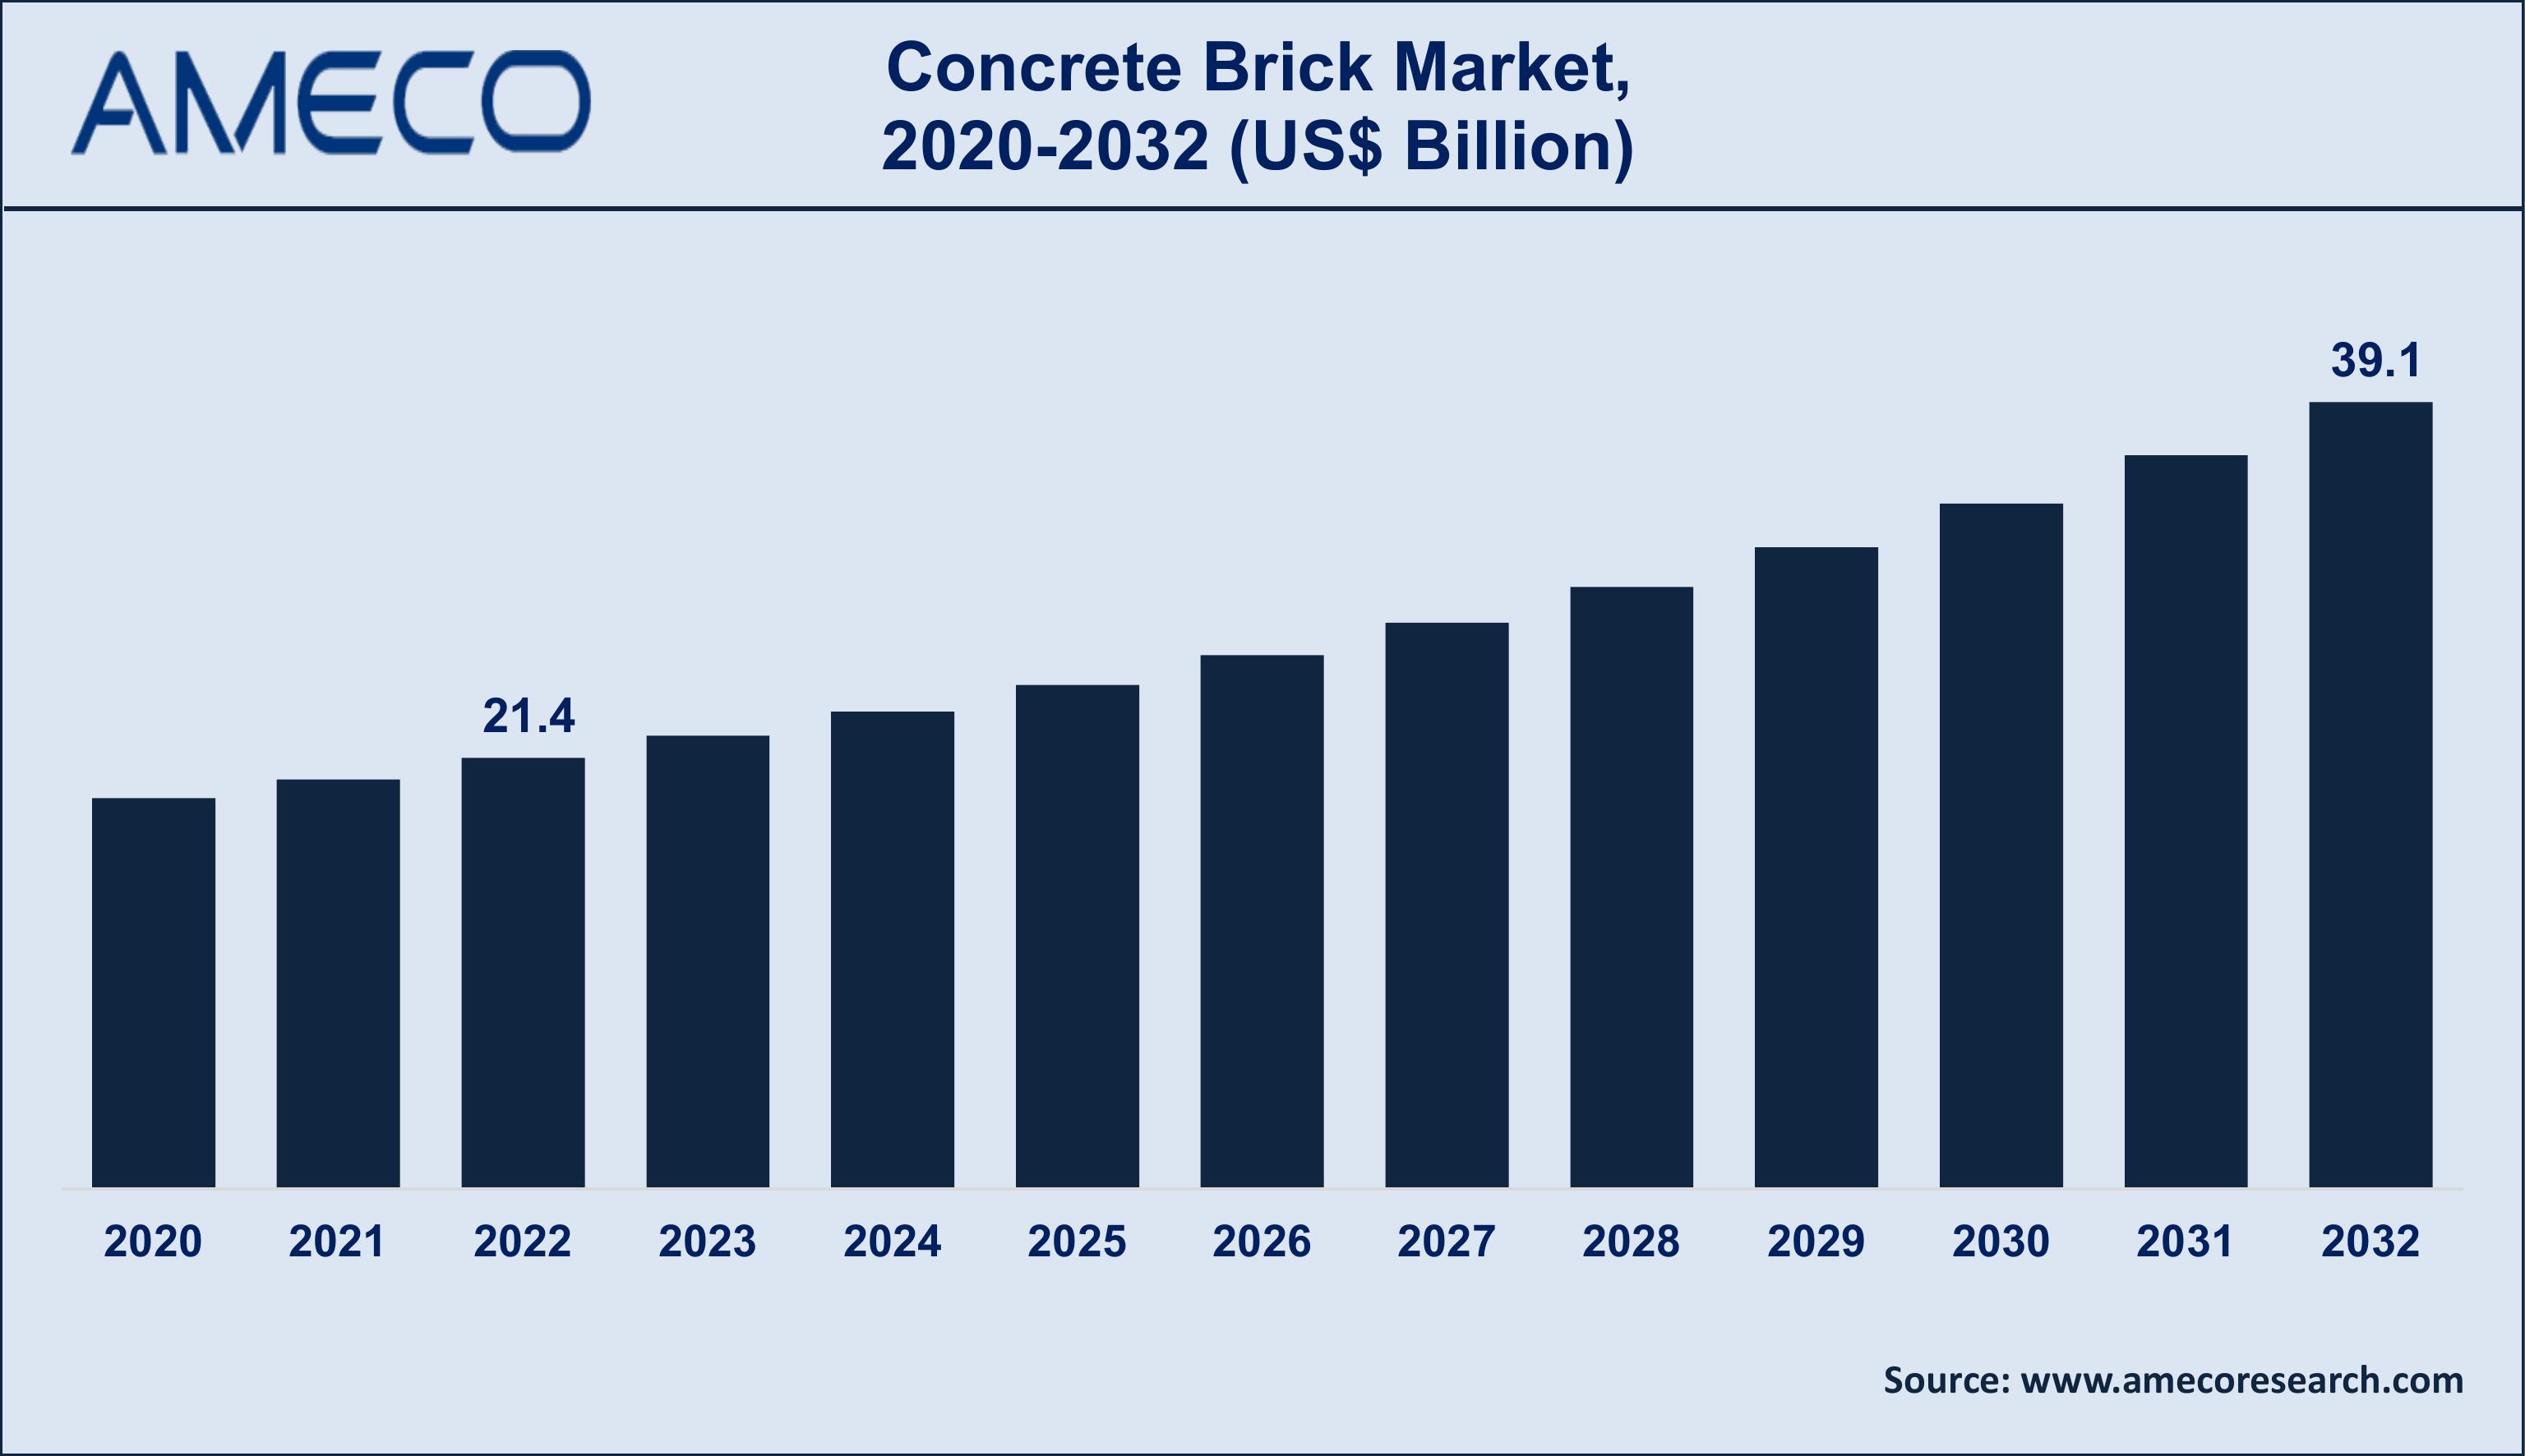  Concrete Brick Market size 